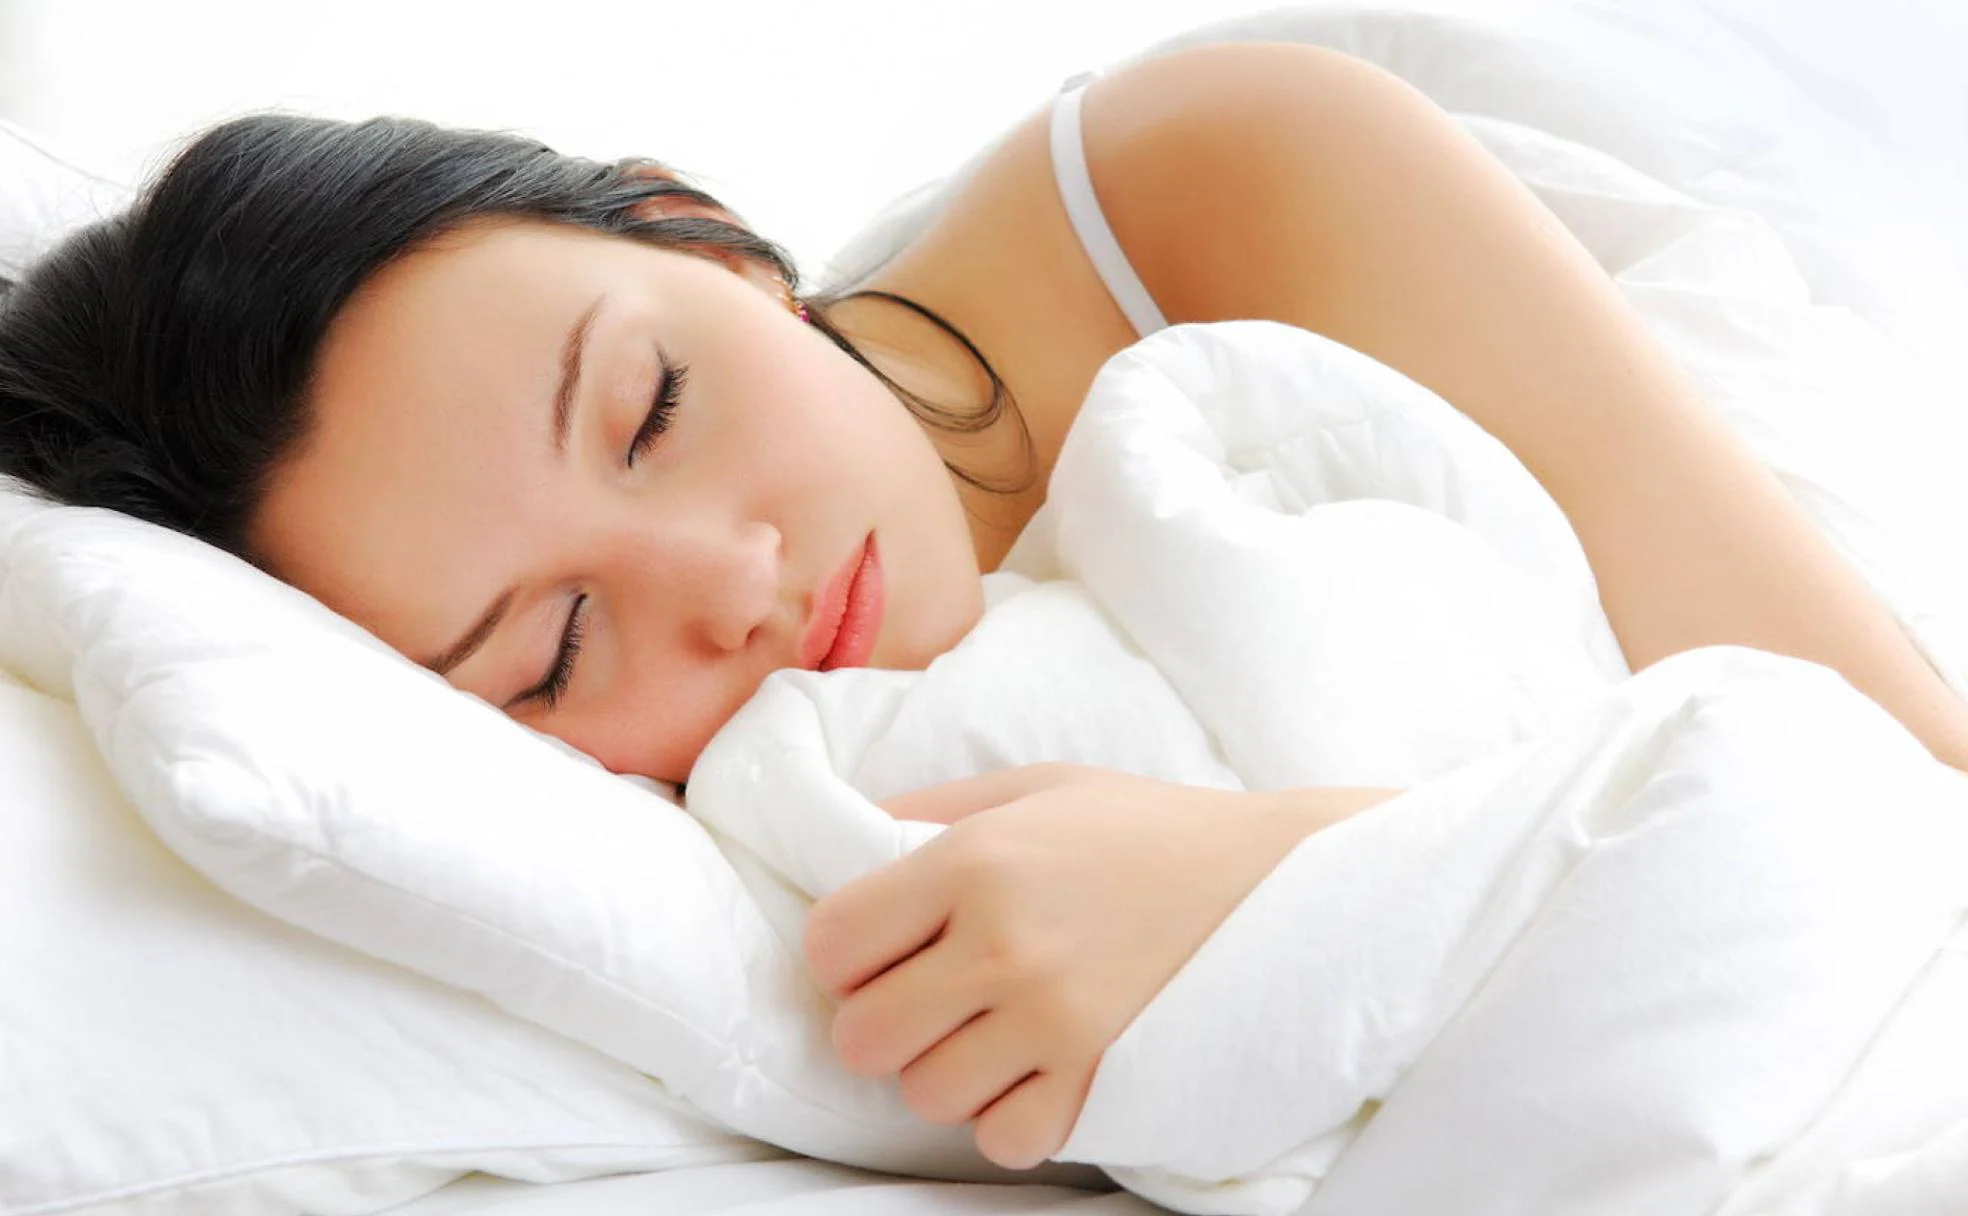 La importancia de dormir bien en las personas mayores